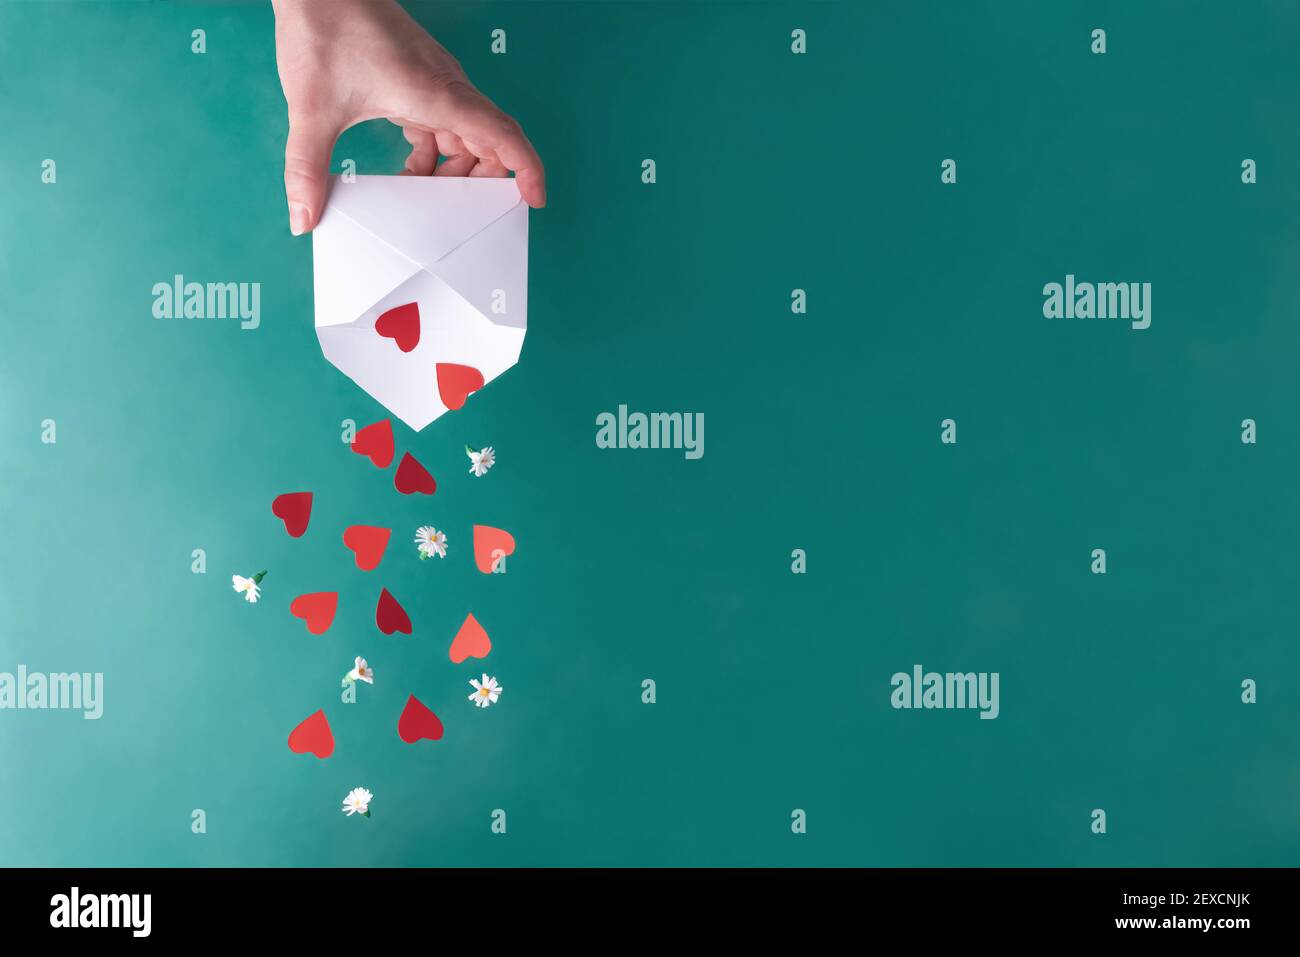 Weibliche Hand schüttelt rote Herzen und weiße Blumen aus einem weißen Umschlag auf einem türkisfarbenen Hintergrund, Nahaufnahme, Kopierraum. Valentinskarte. Stockfoto